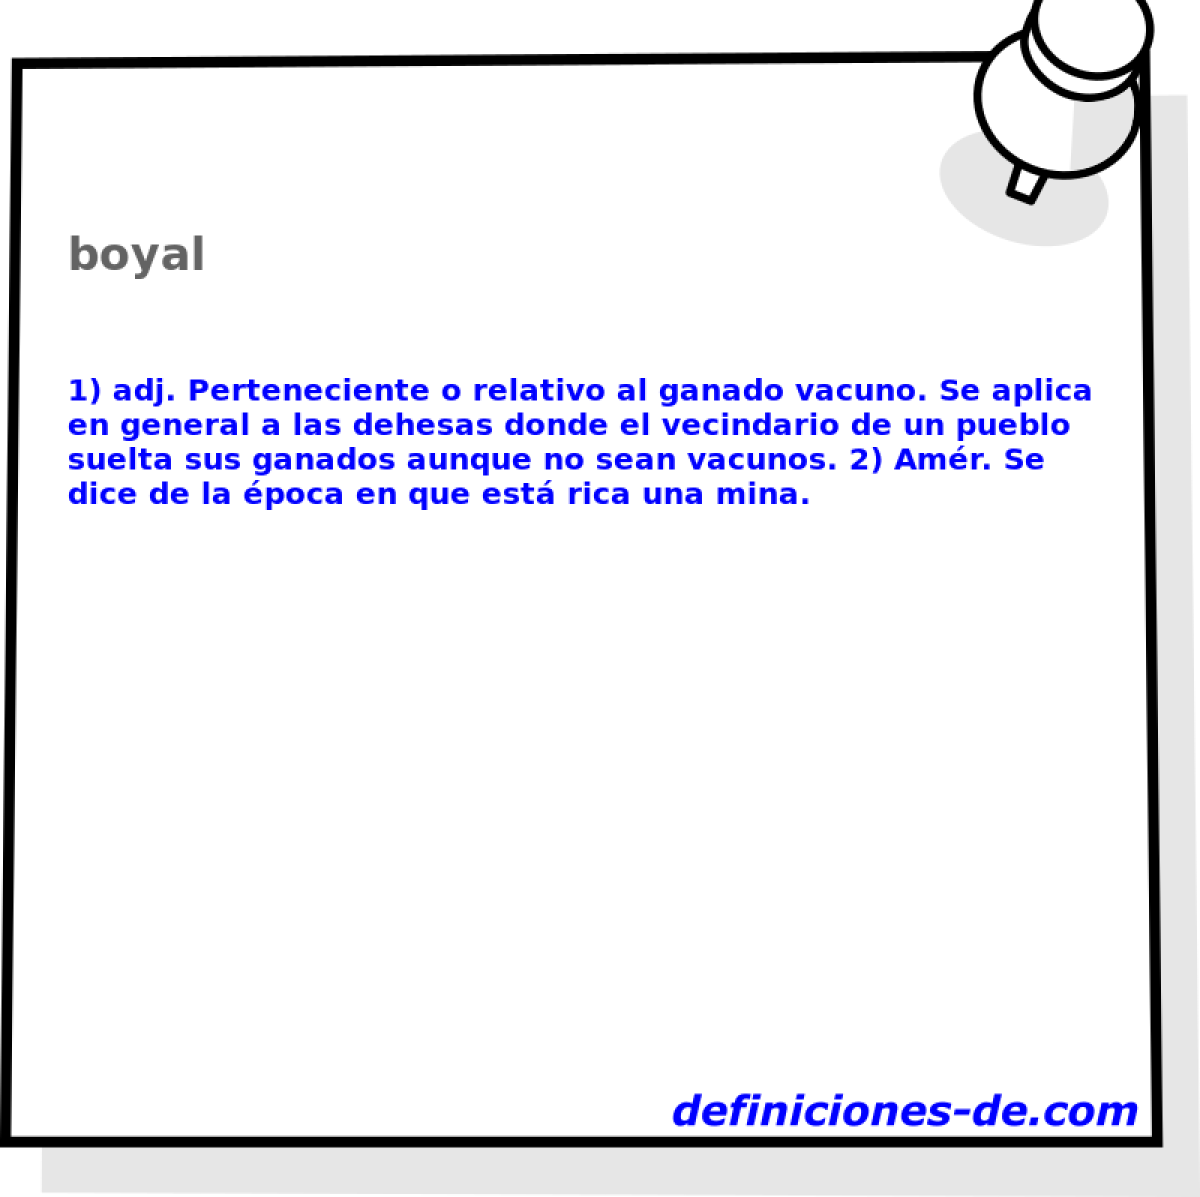 boyal 